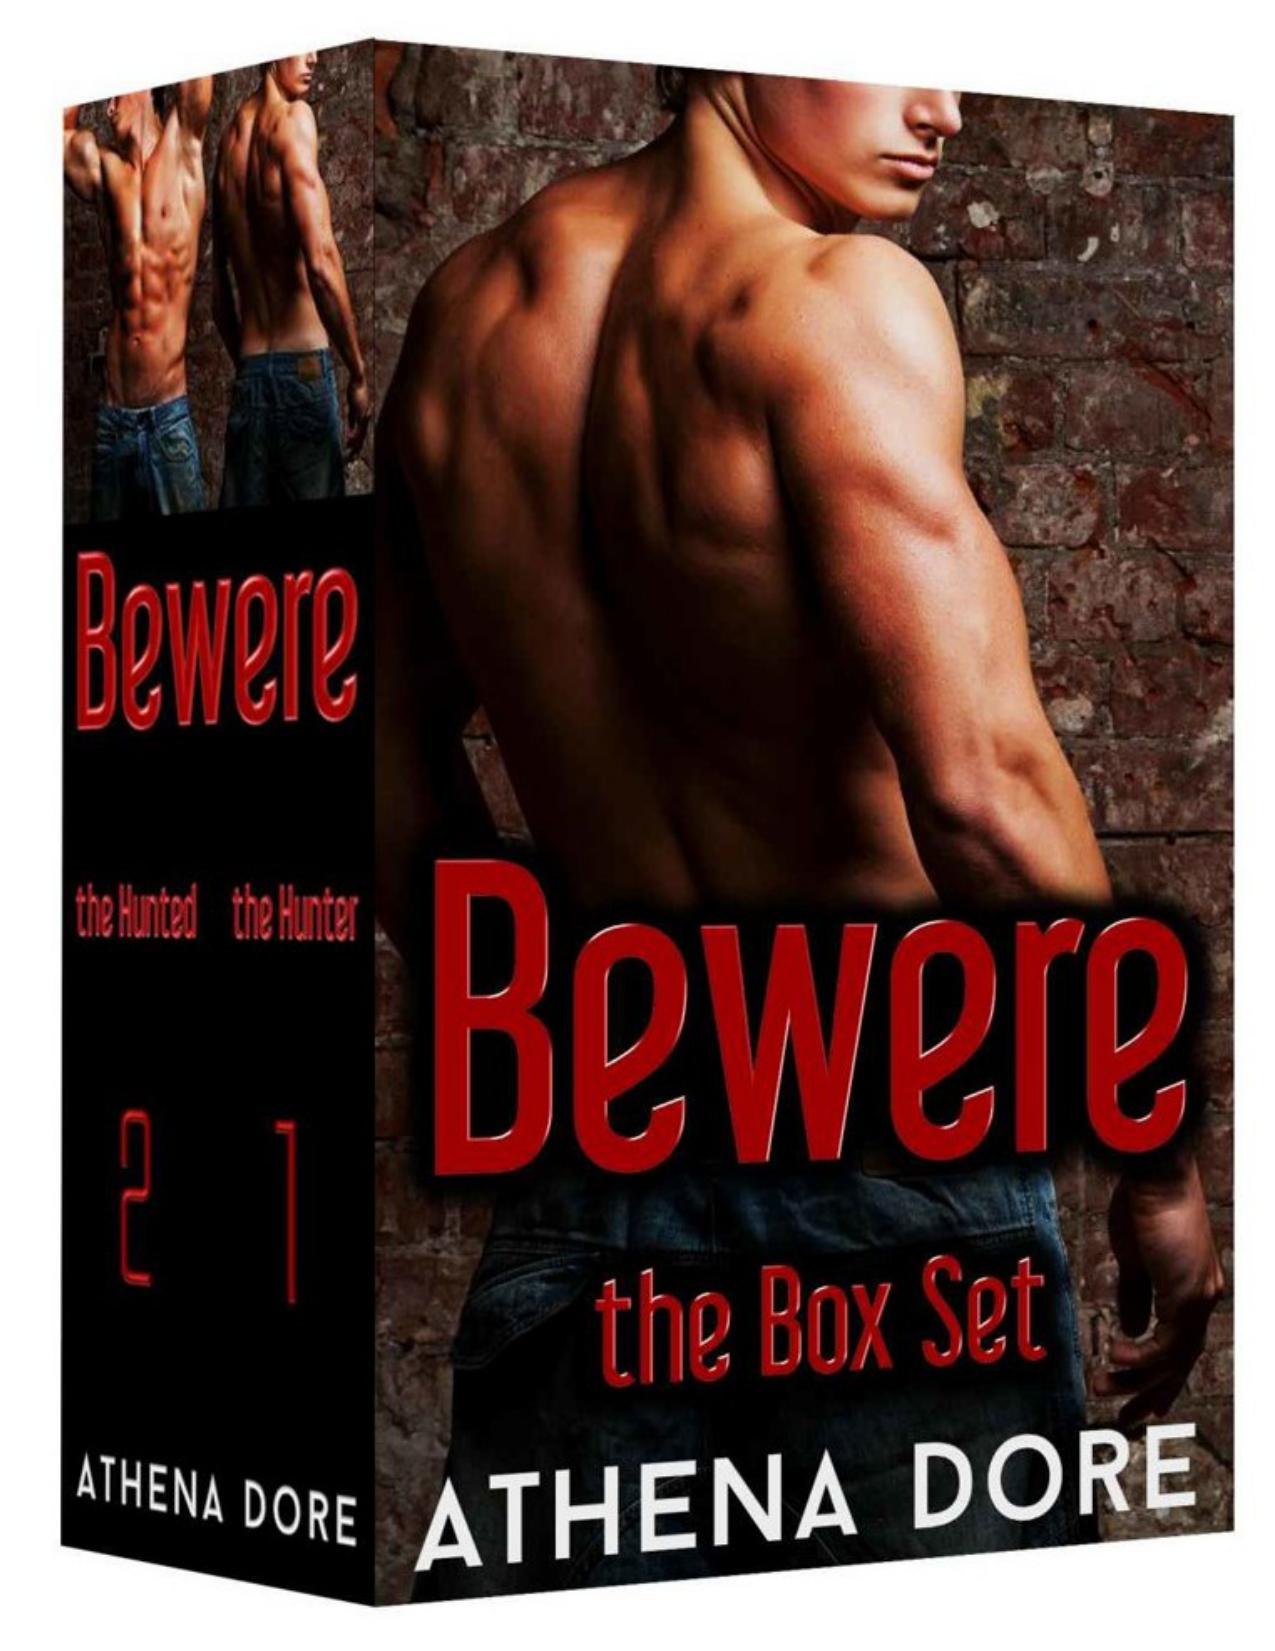 Download Bewere The Box Set Bwwm British Bear Shifter Romance Pdf By Athena Dore 